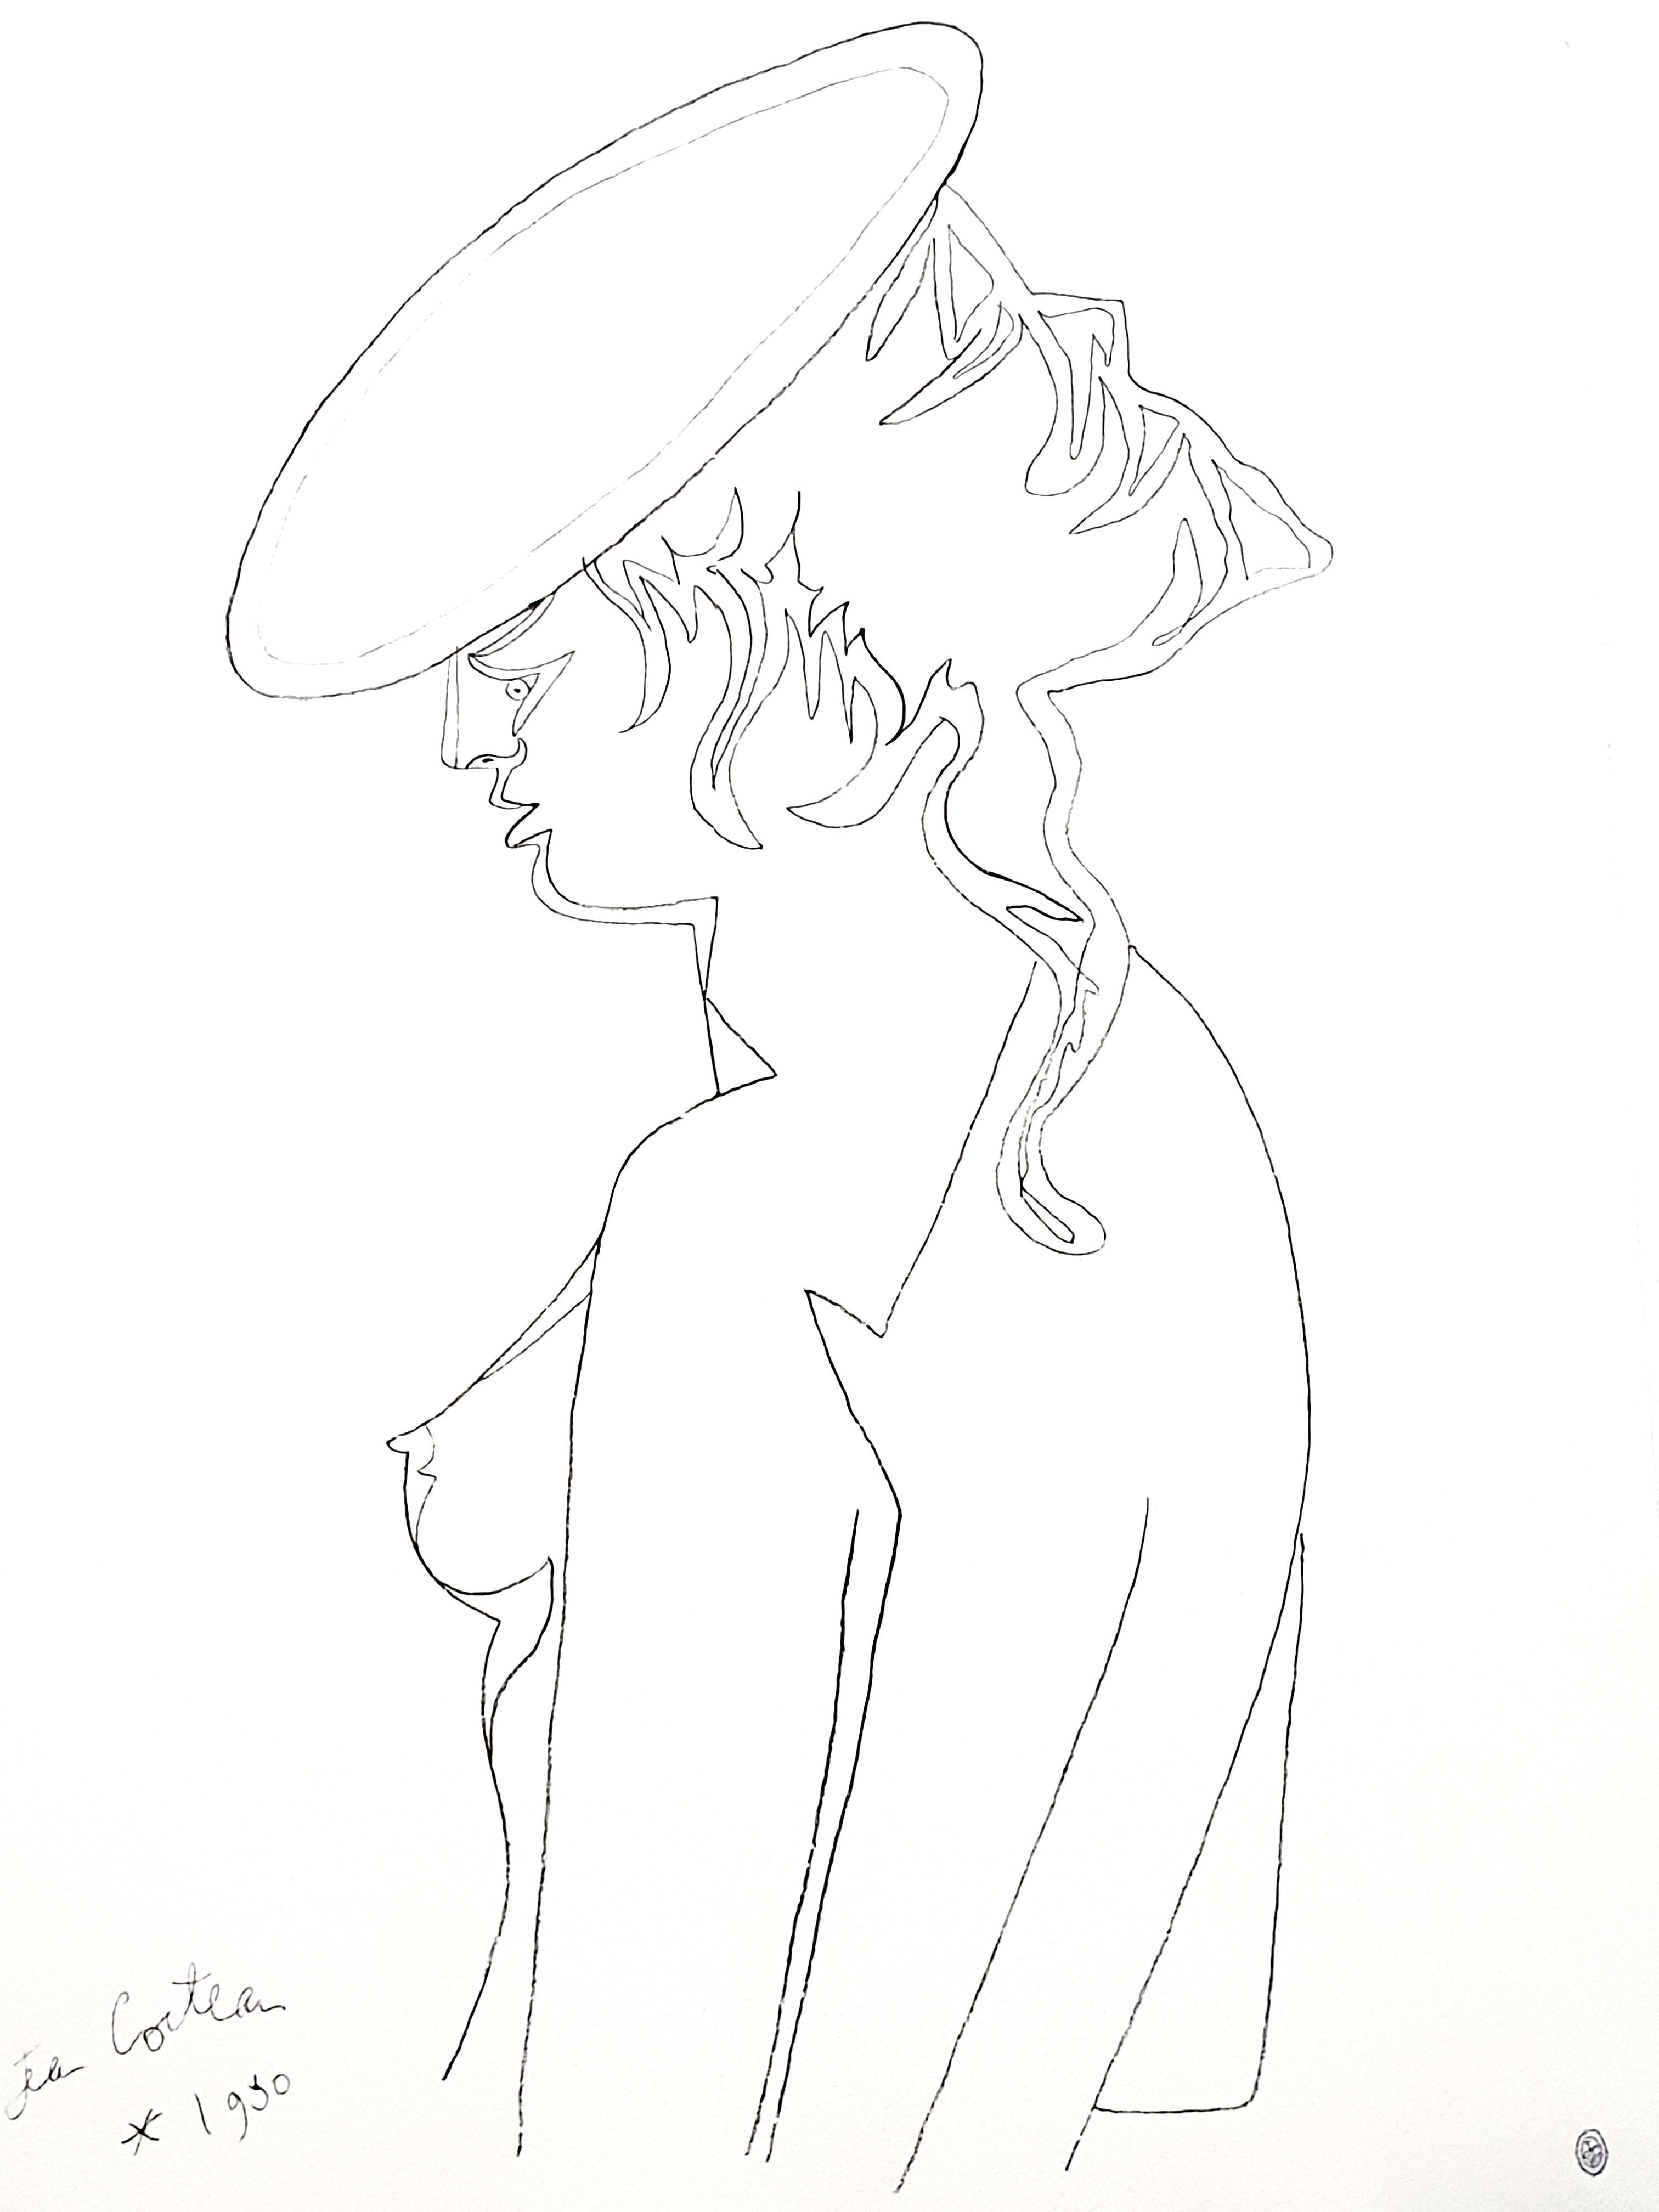 Lithographie originale de Jean Cocteau
Titre : A.Profiles
Signé dans la plaque
Dimensions : 65 x 44 cm